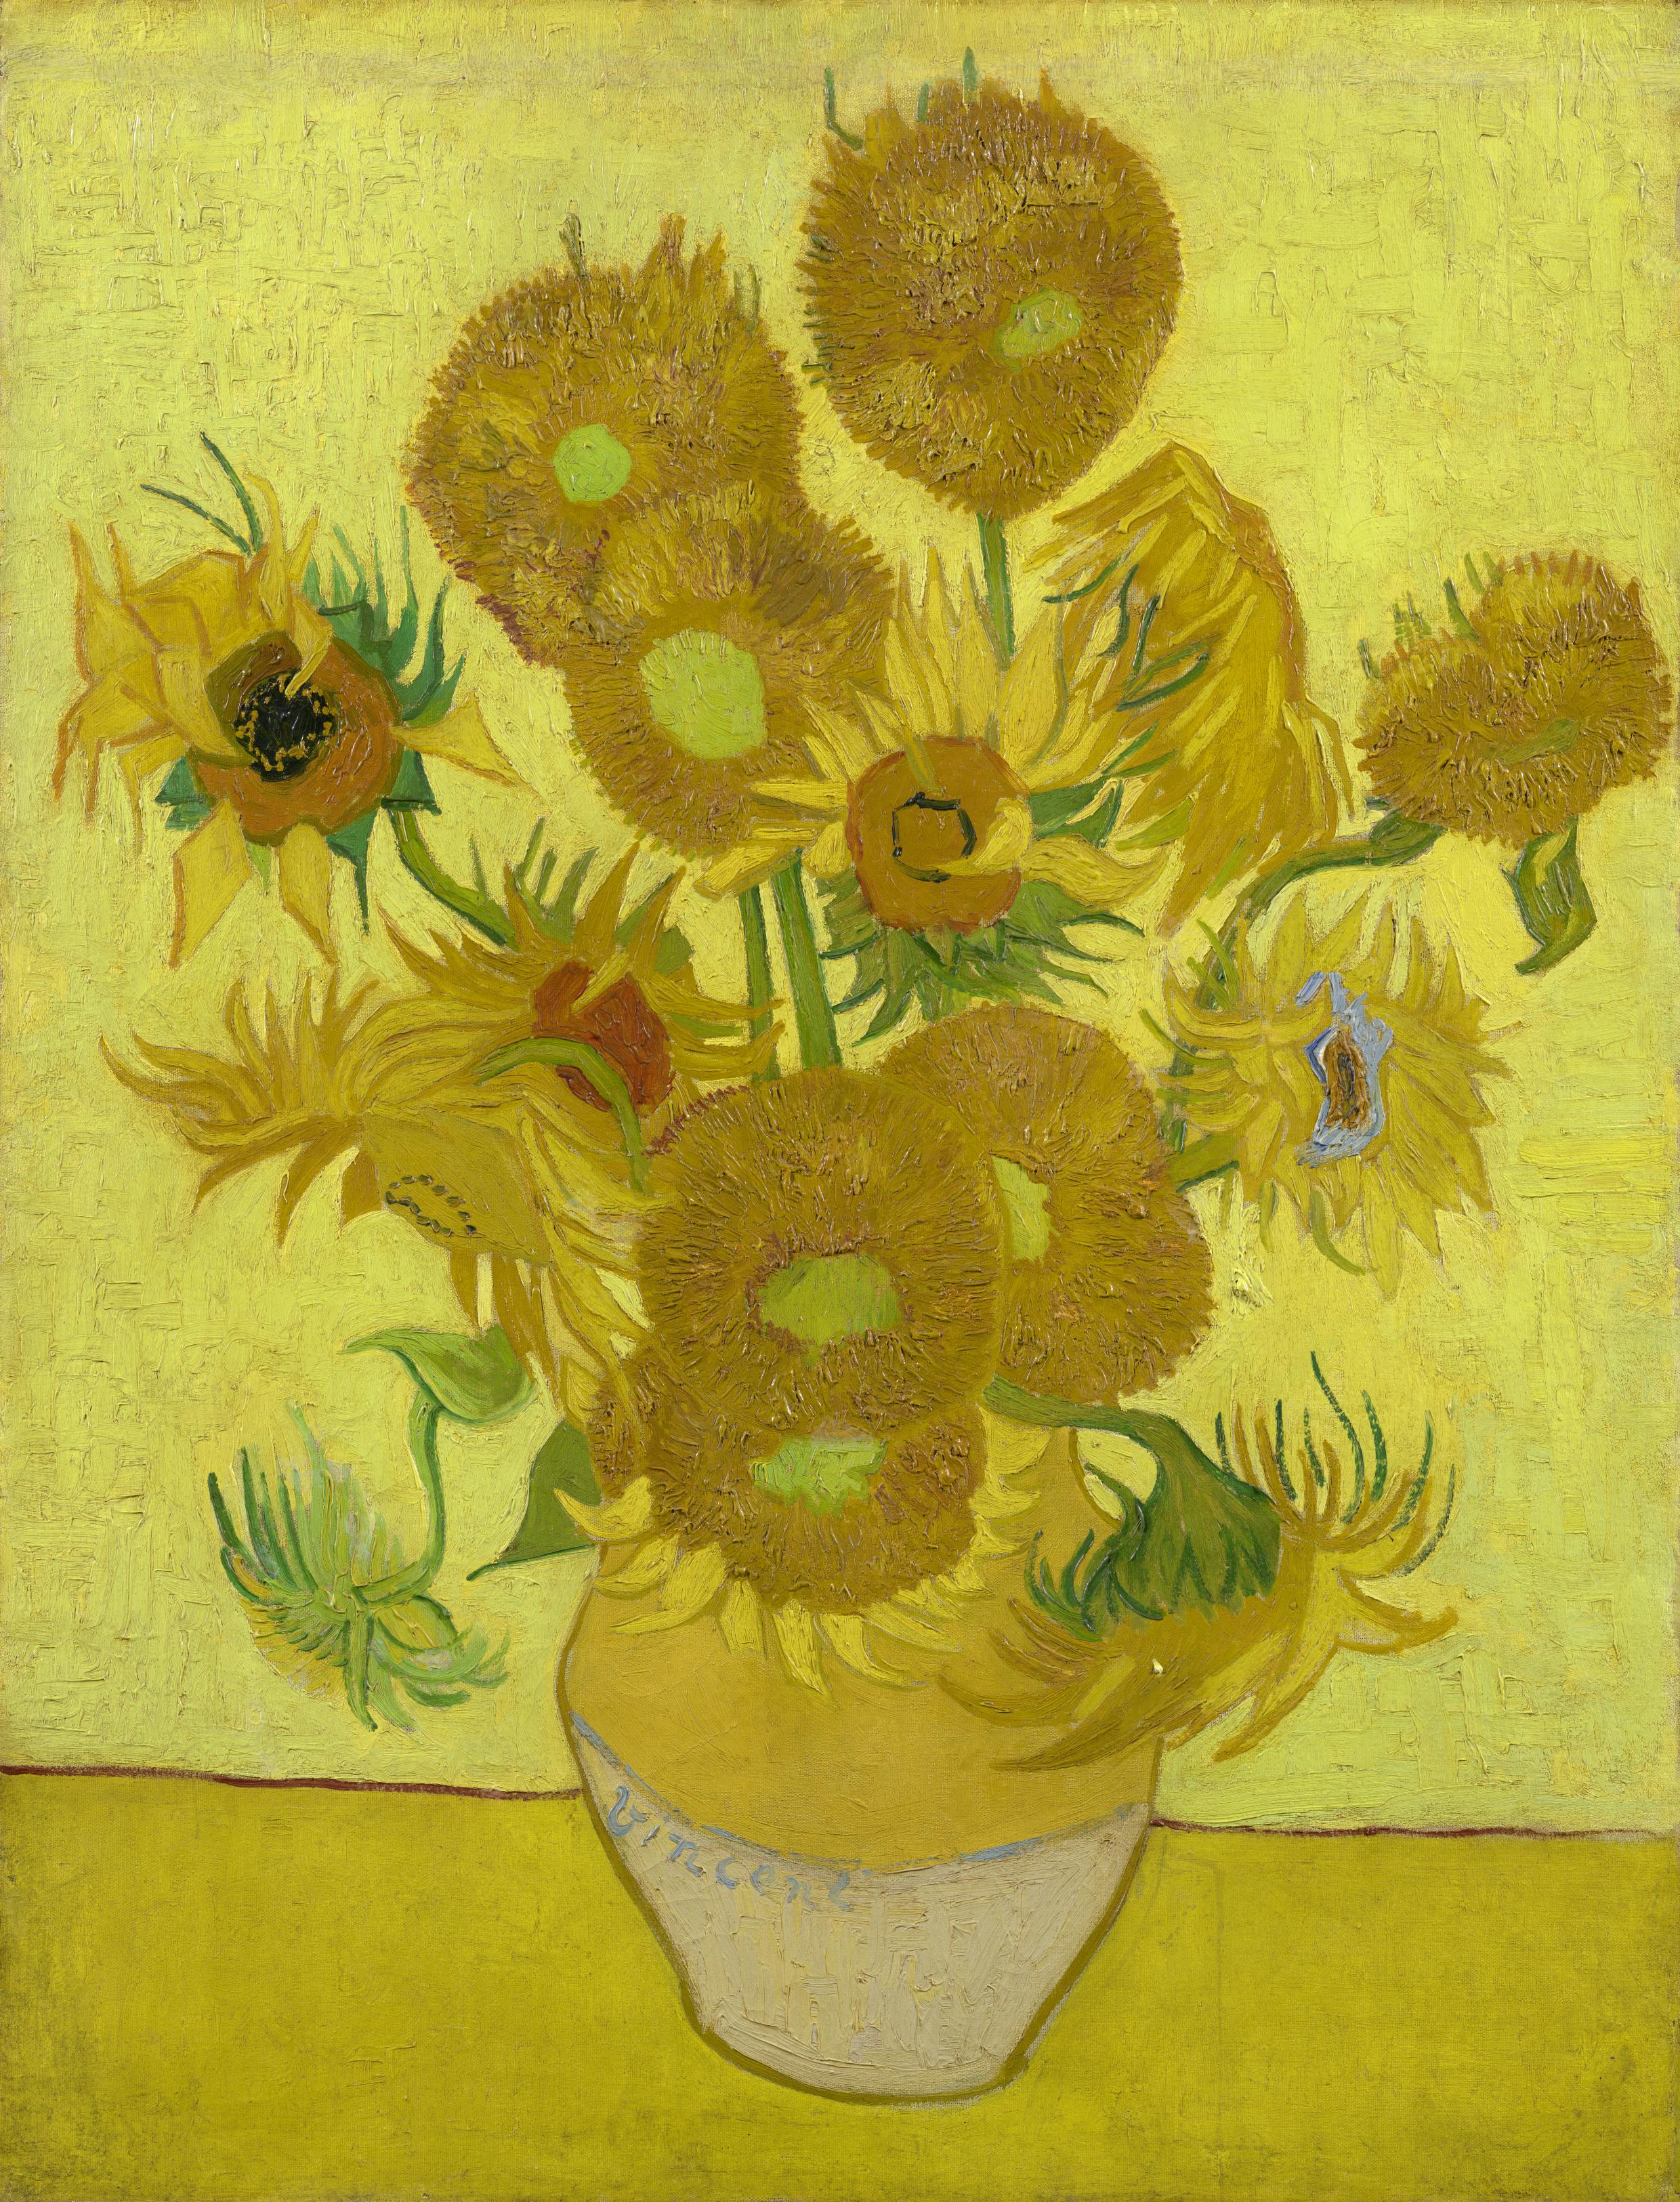 Ayçiçekleri by Vincent van Gogh - Ocak 1889 - 95 cm x 73 cm Van Gogh Müzesi